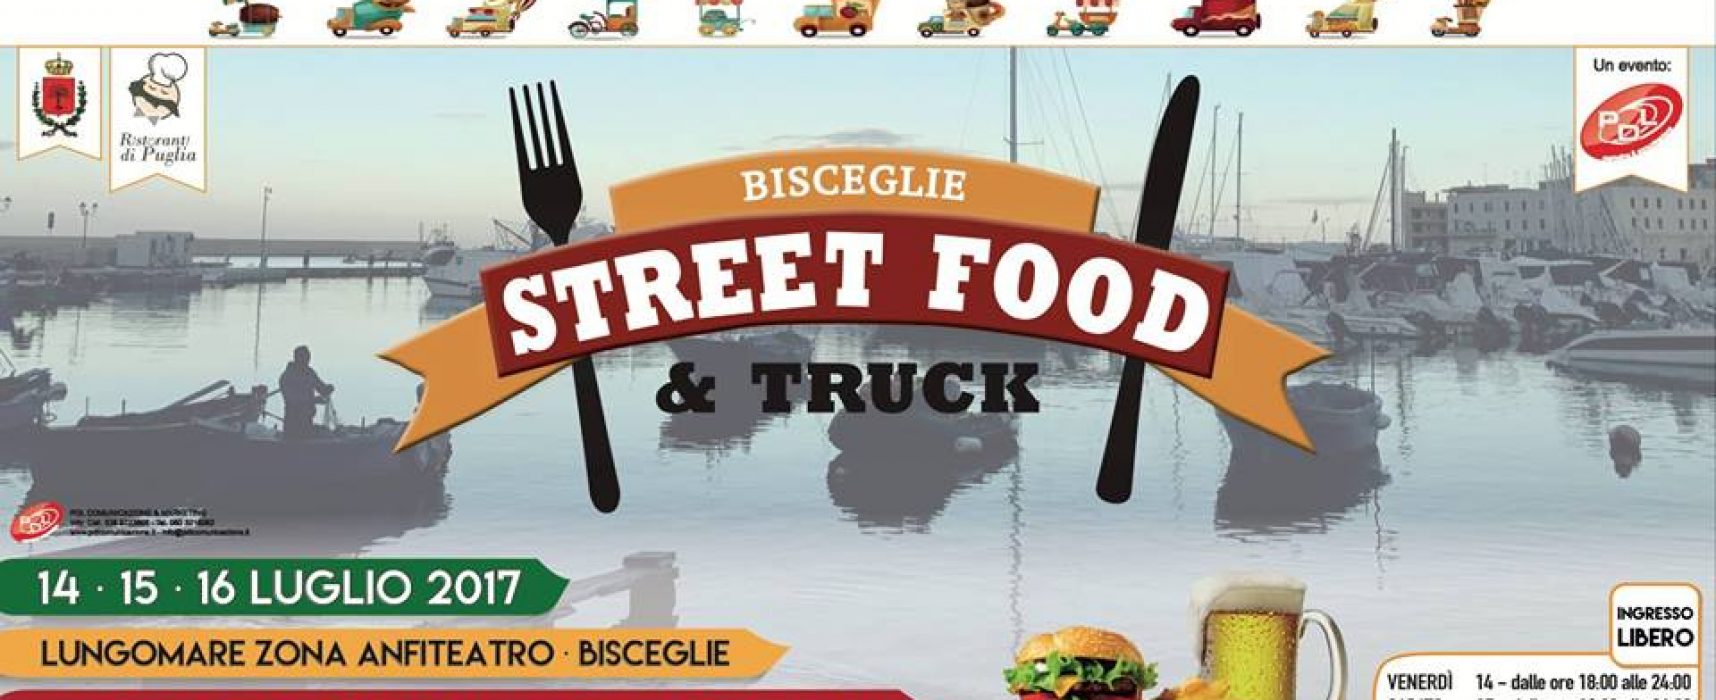 “Street Food & Truck” arriva a Bisceglie per tre giorni all’insegna di musica, cibo e divertimento